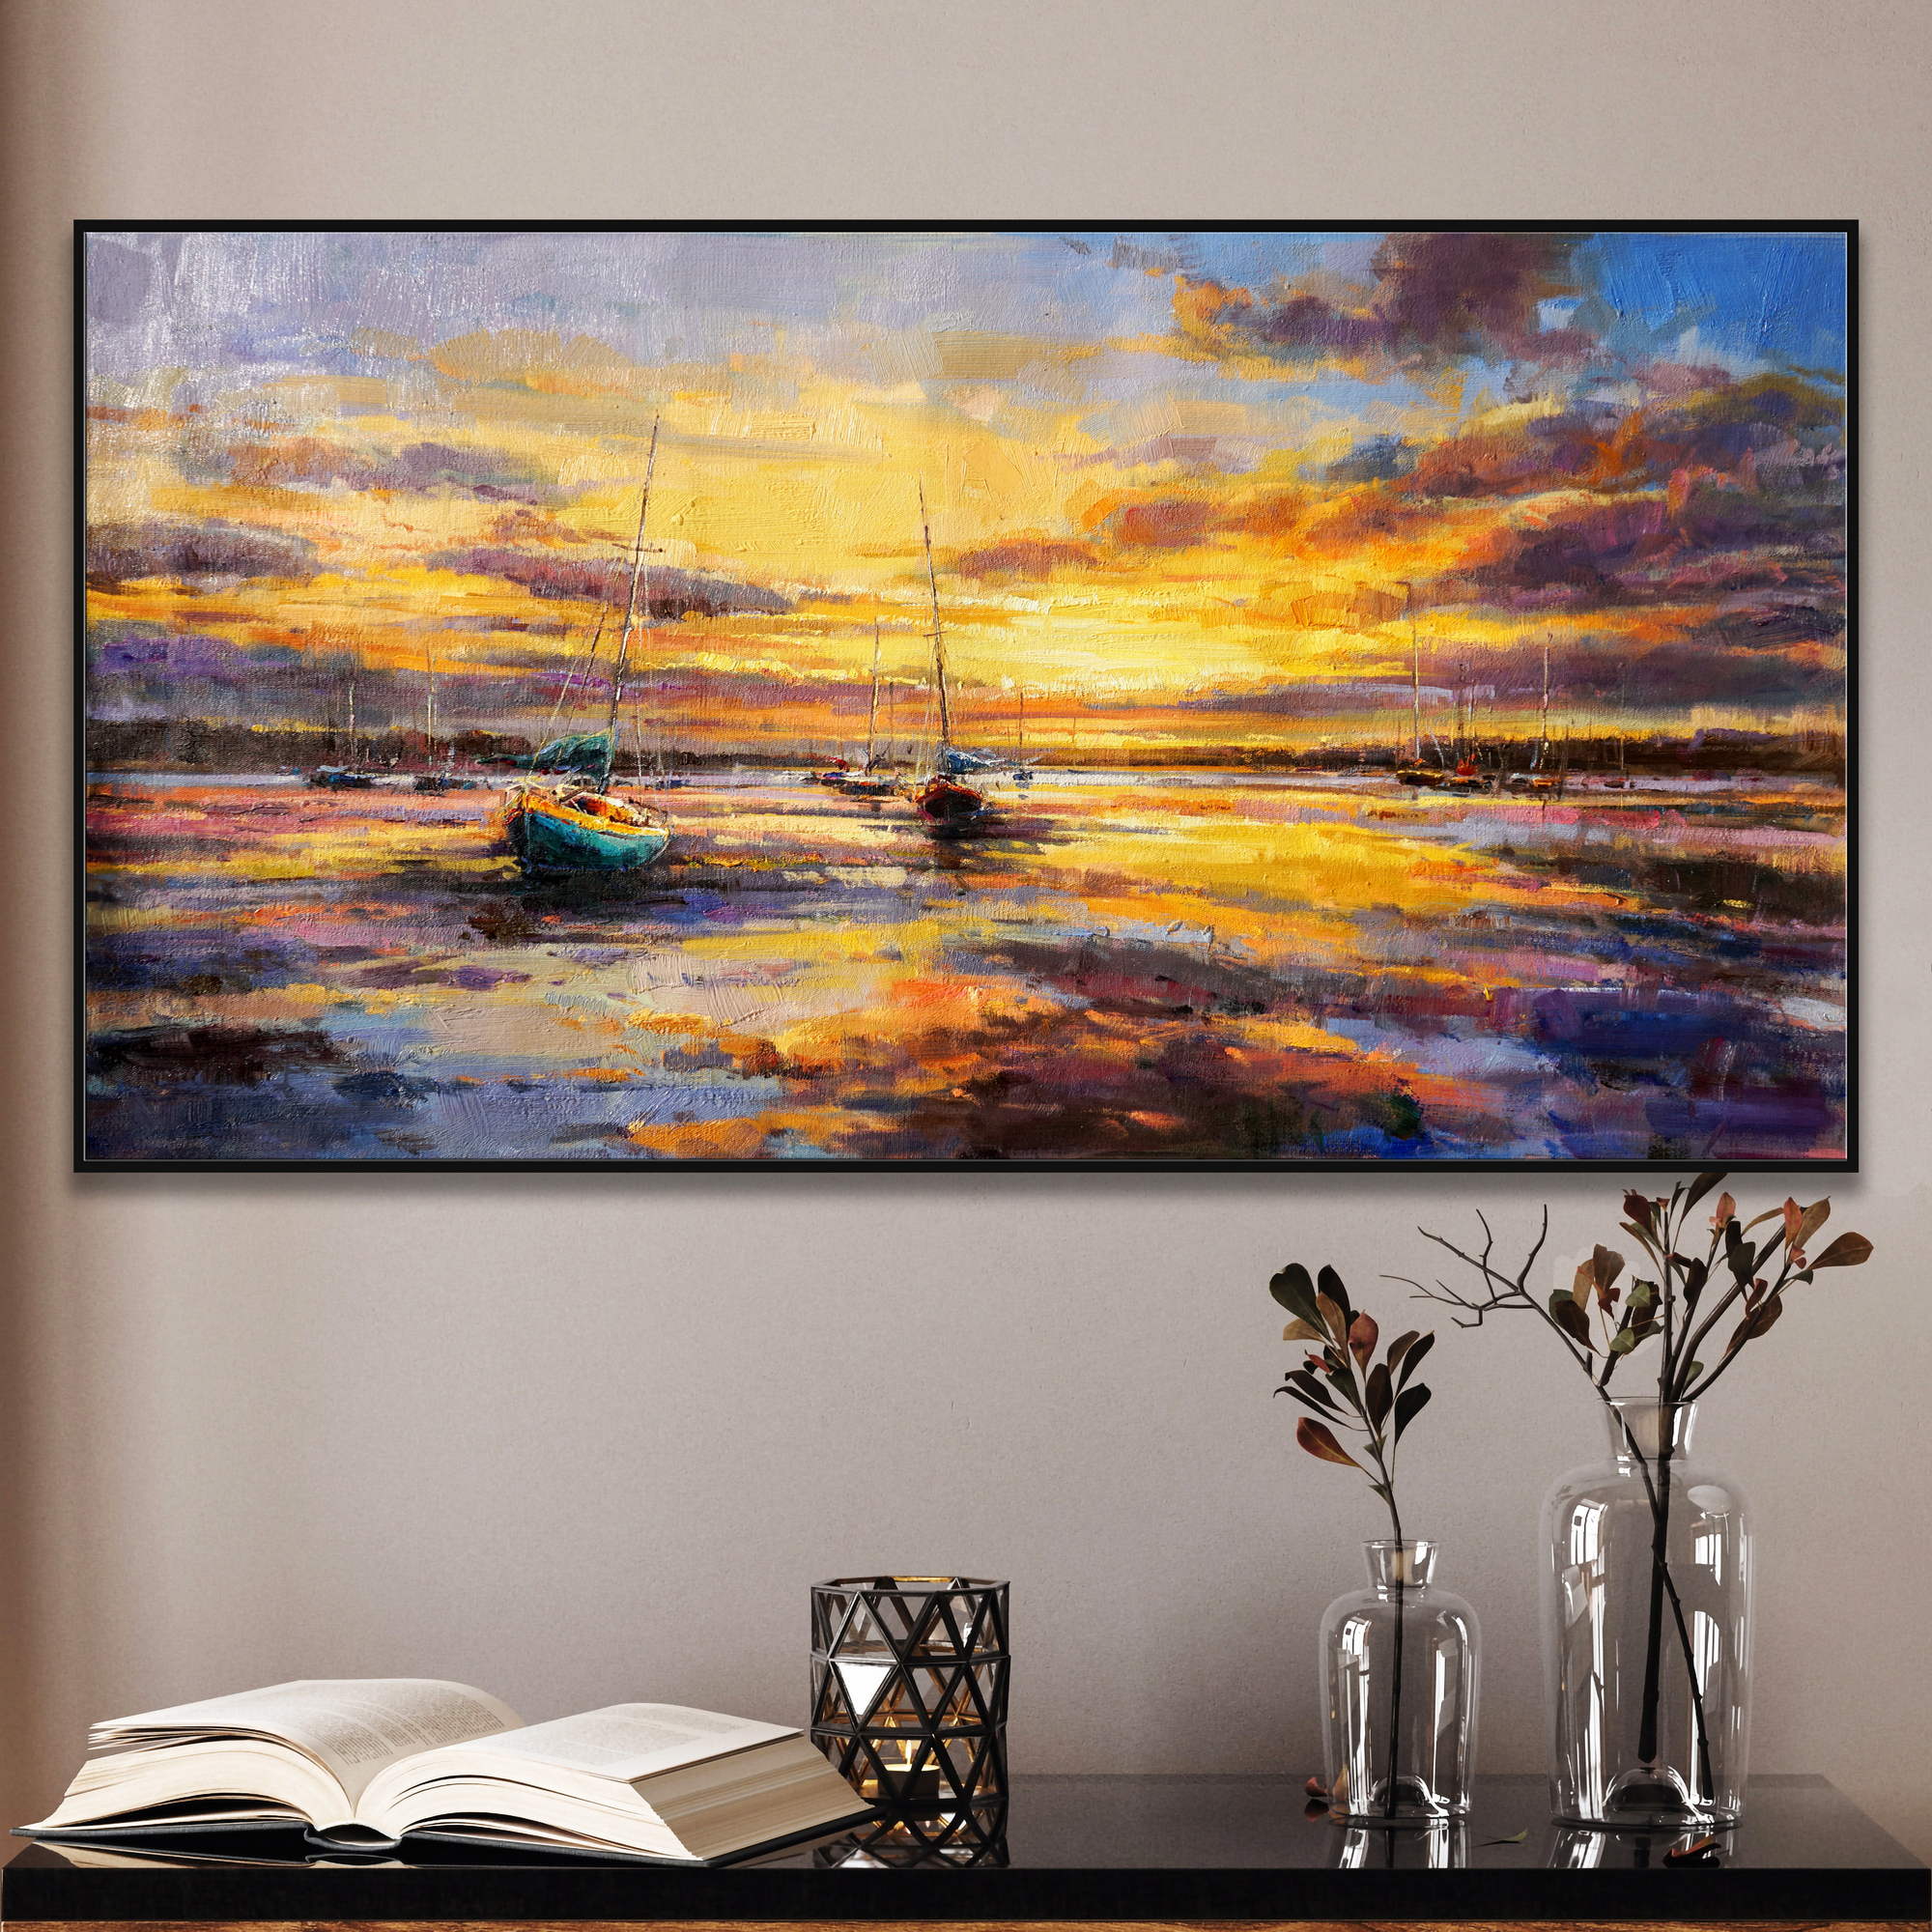 Dipinto di una marina con tramonto colorato e barche a vela in rada